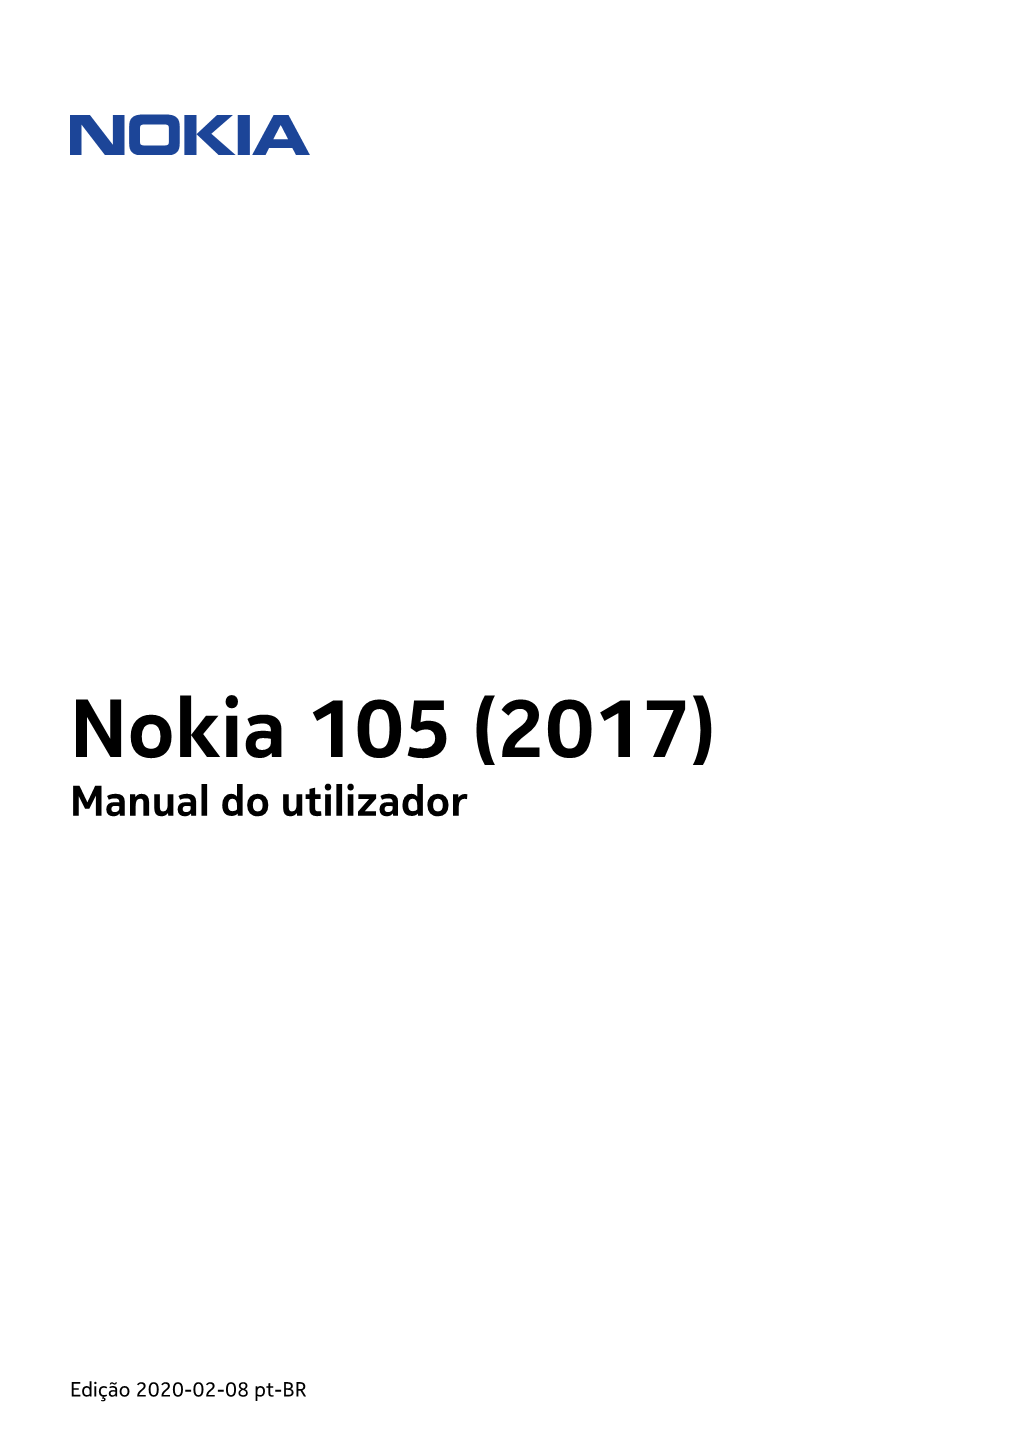 Nokia 105 (2017) Manual Do Utilizador